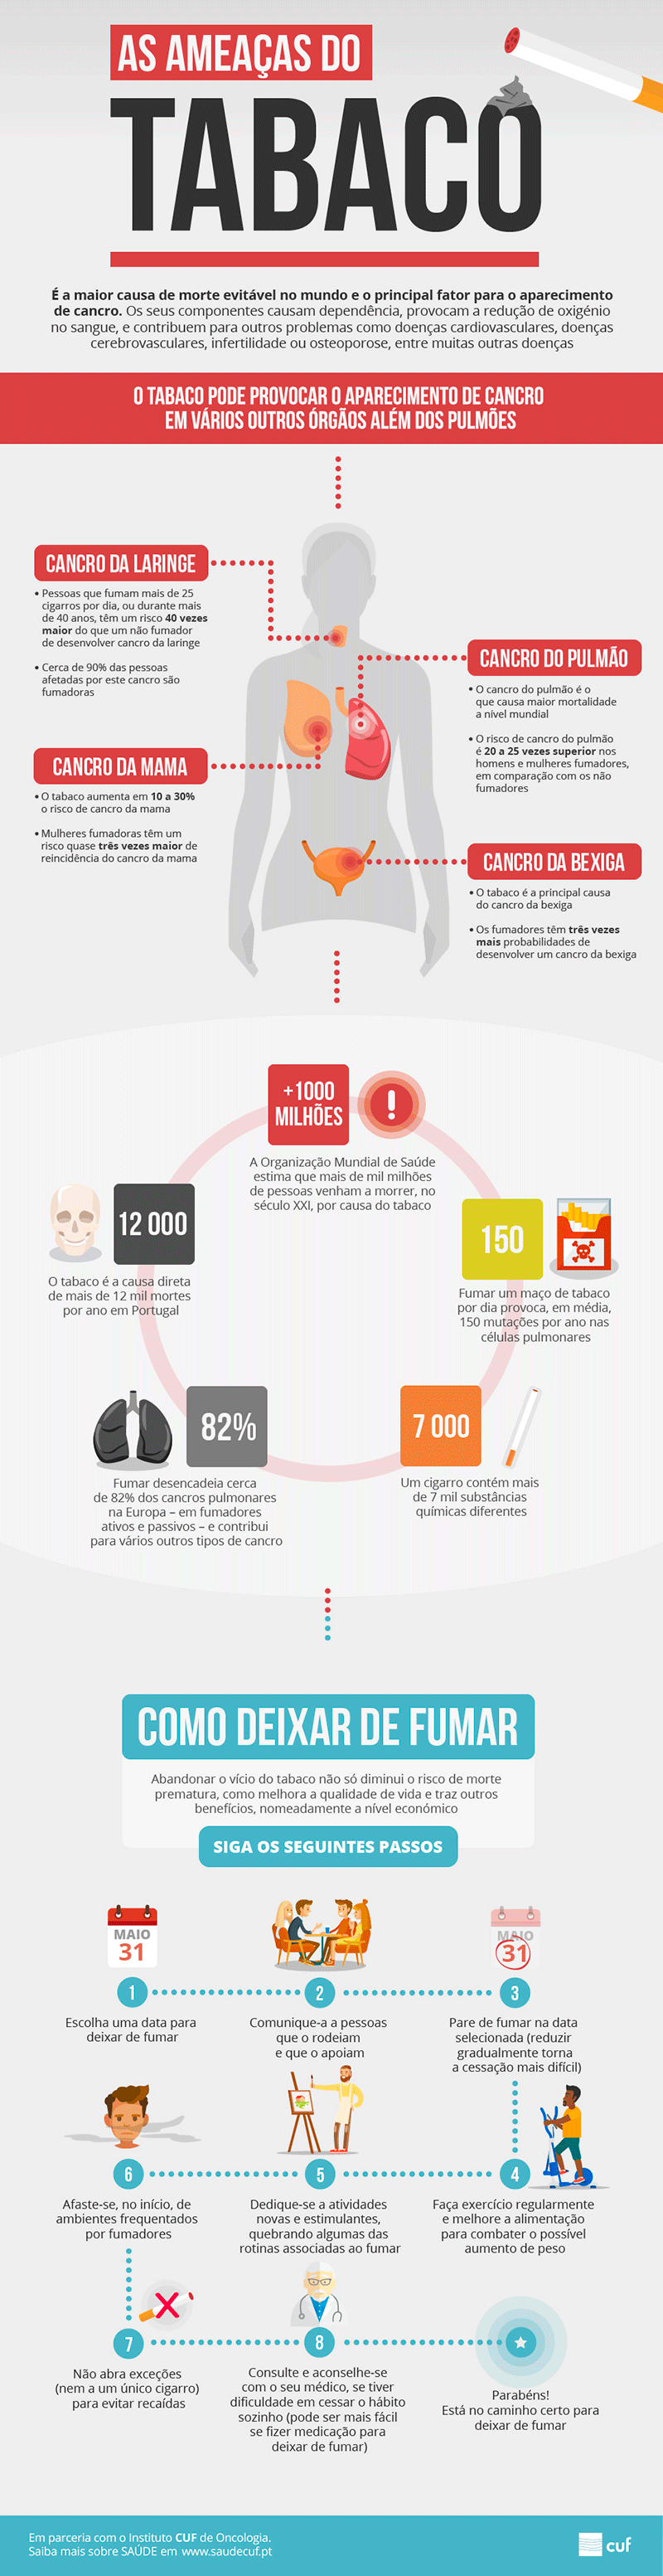 Infografia sobre os malefícios do tabaco e como deixá-lo